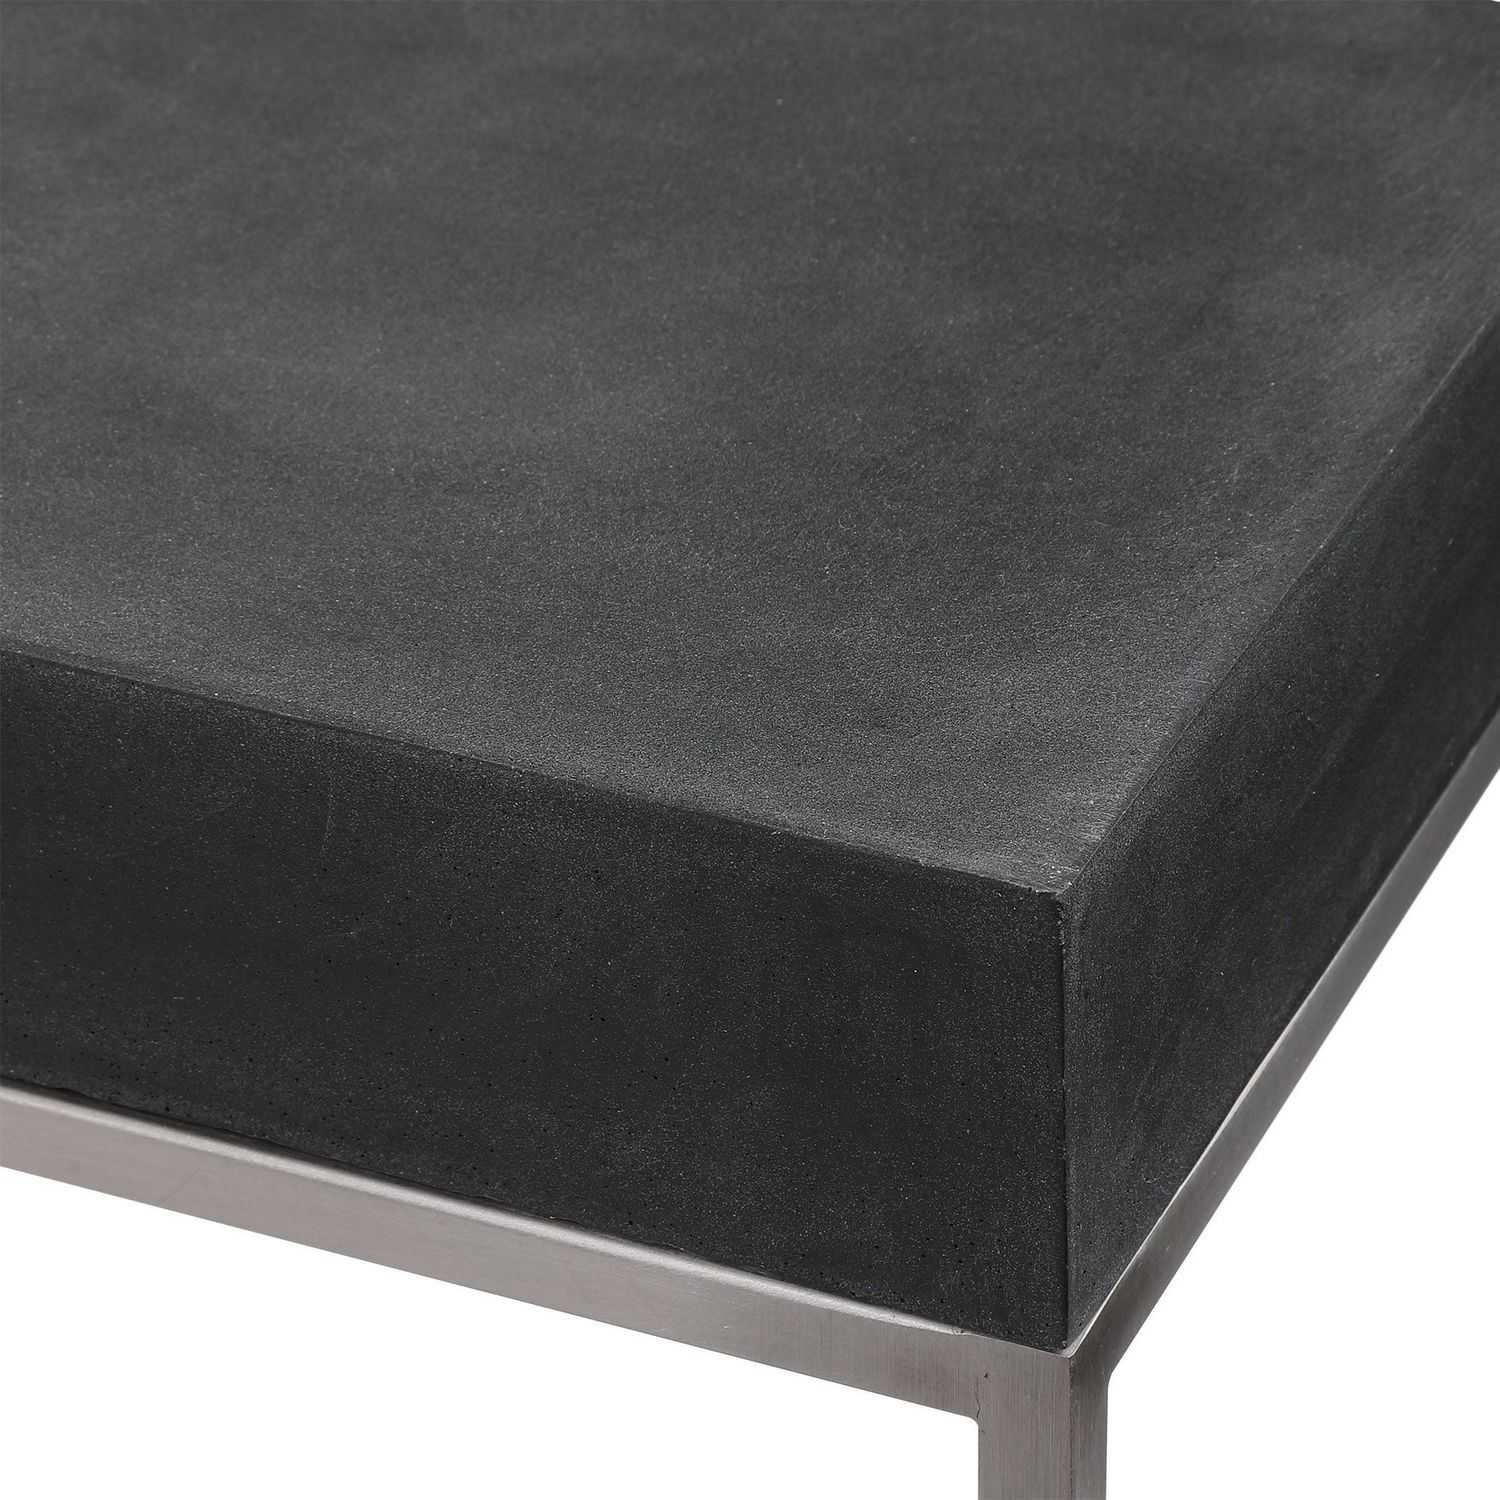 Uttermost Jase Concrete Console Table - Black